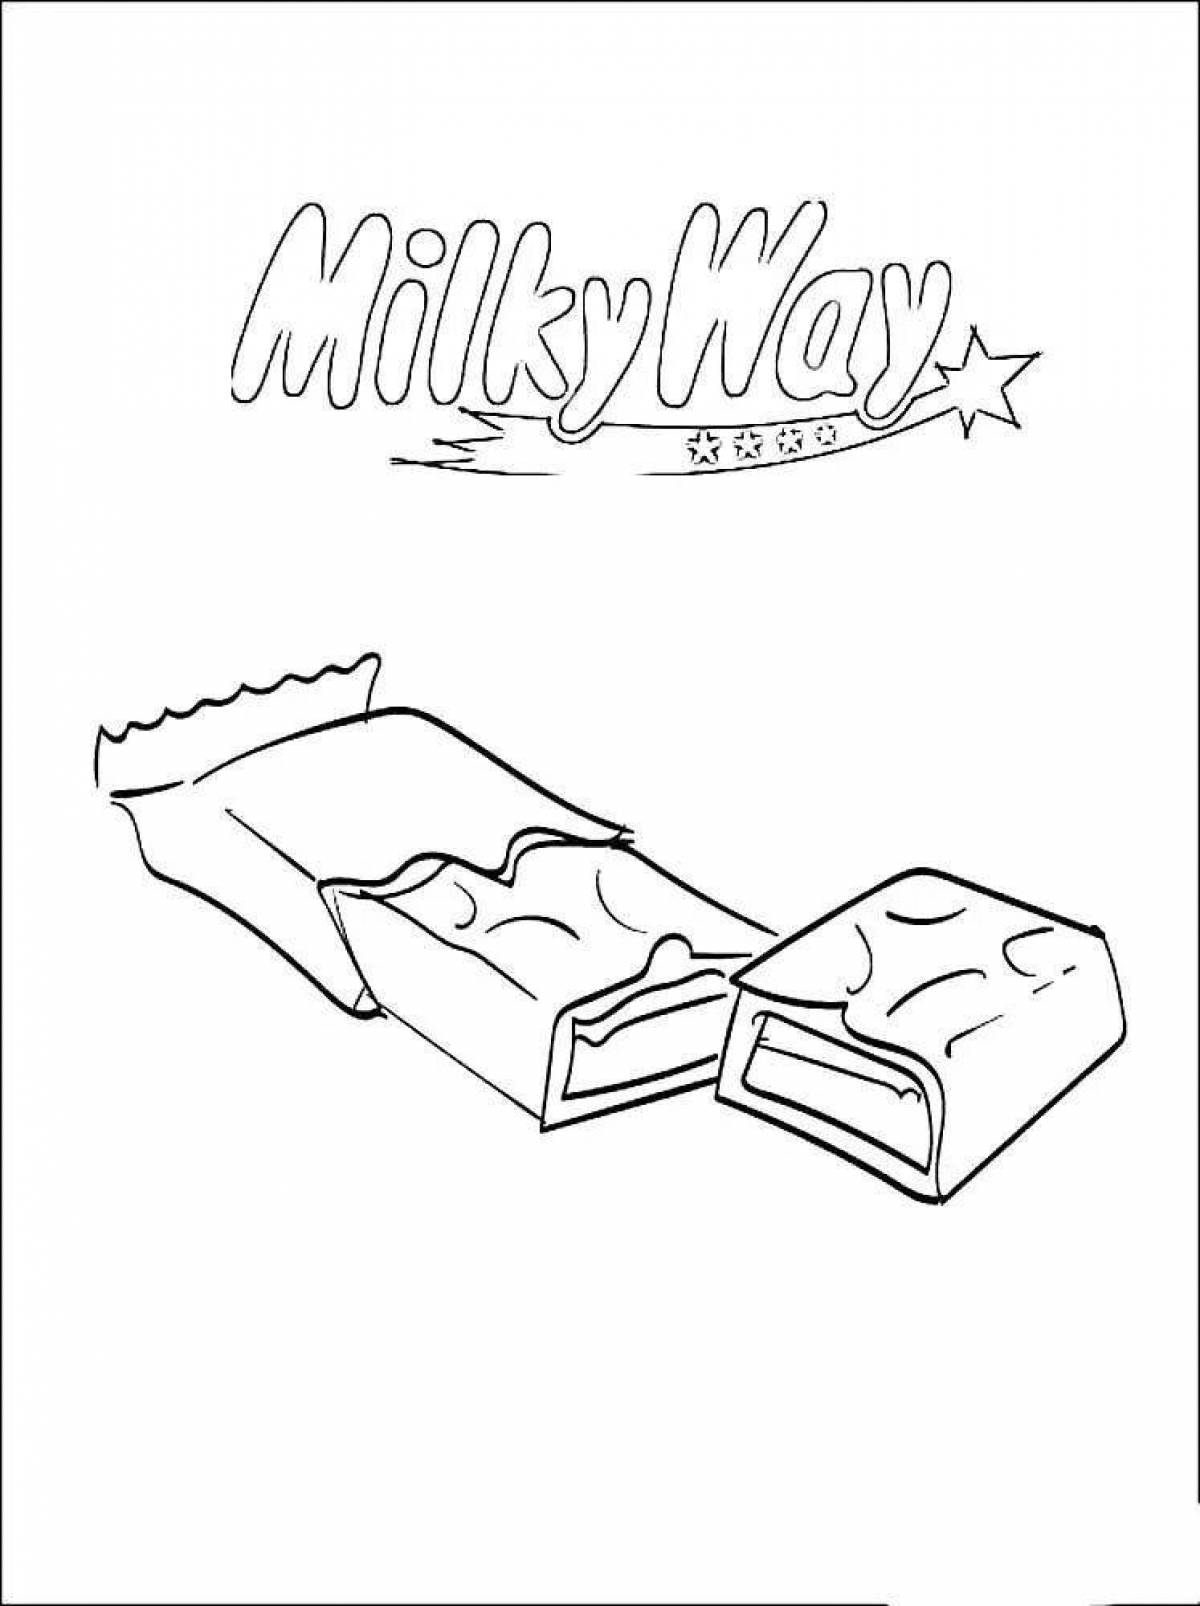 Milk's amazing coloring book